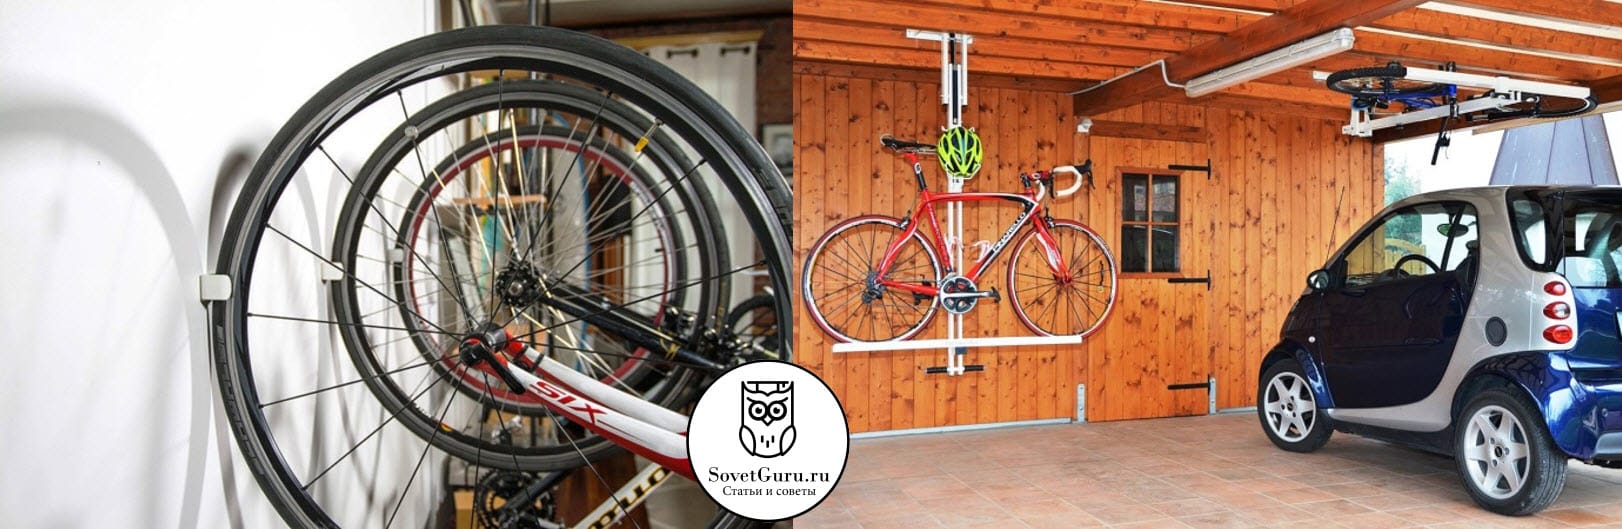 Как хранить велосипед зимой в гараже или подвале 